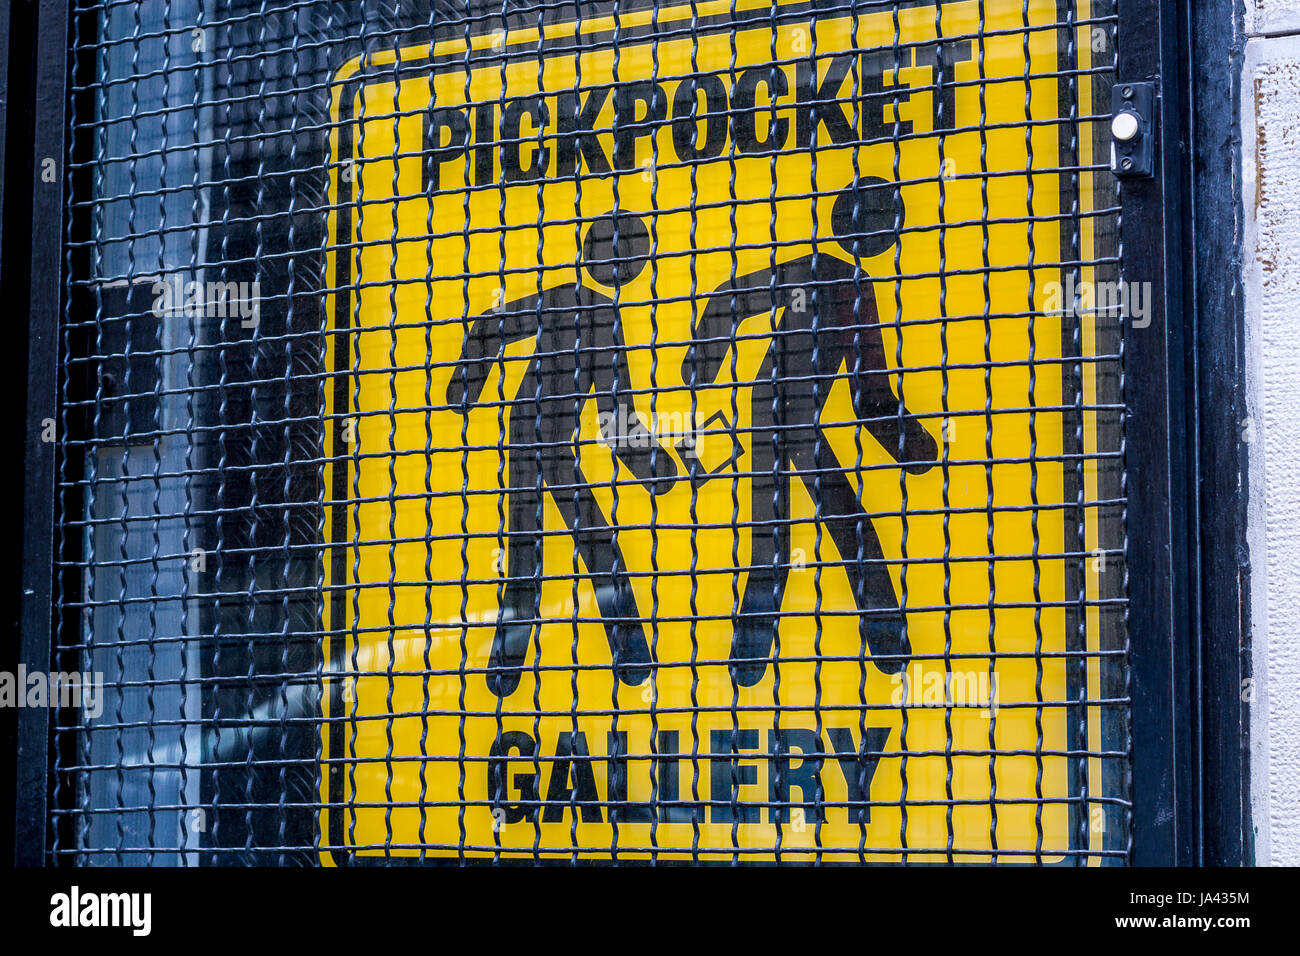 Pickpocket galerie - un panneau d'avertissement noir sur fond jaune Banque D'Images